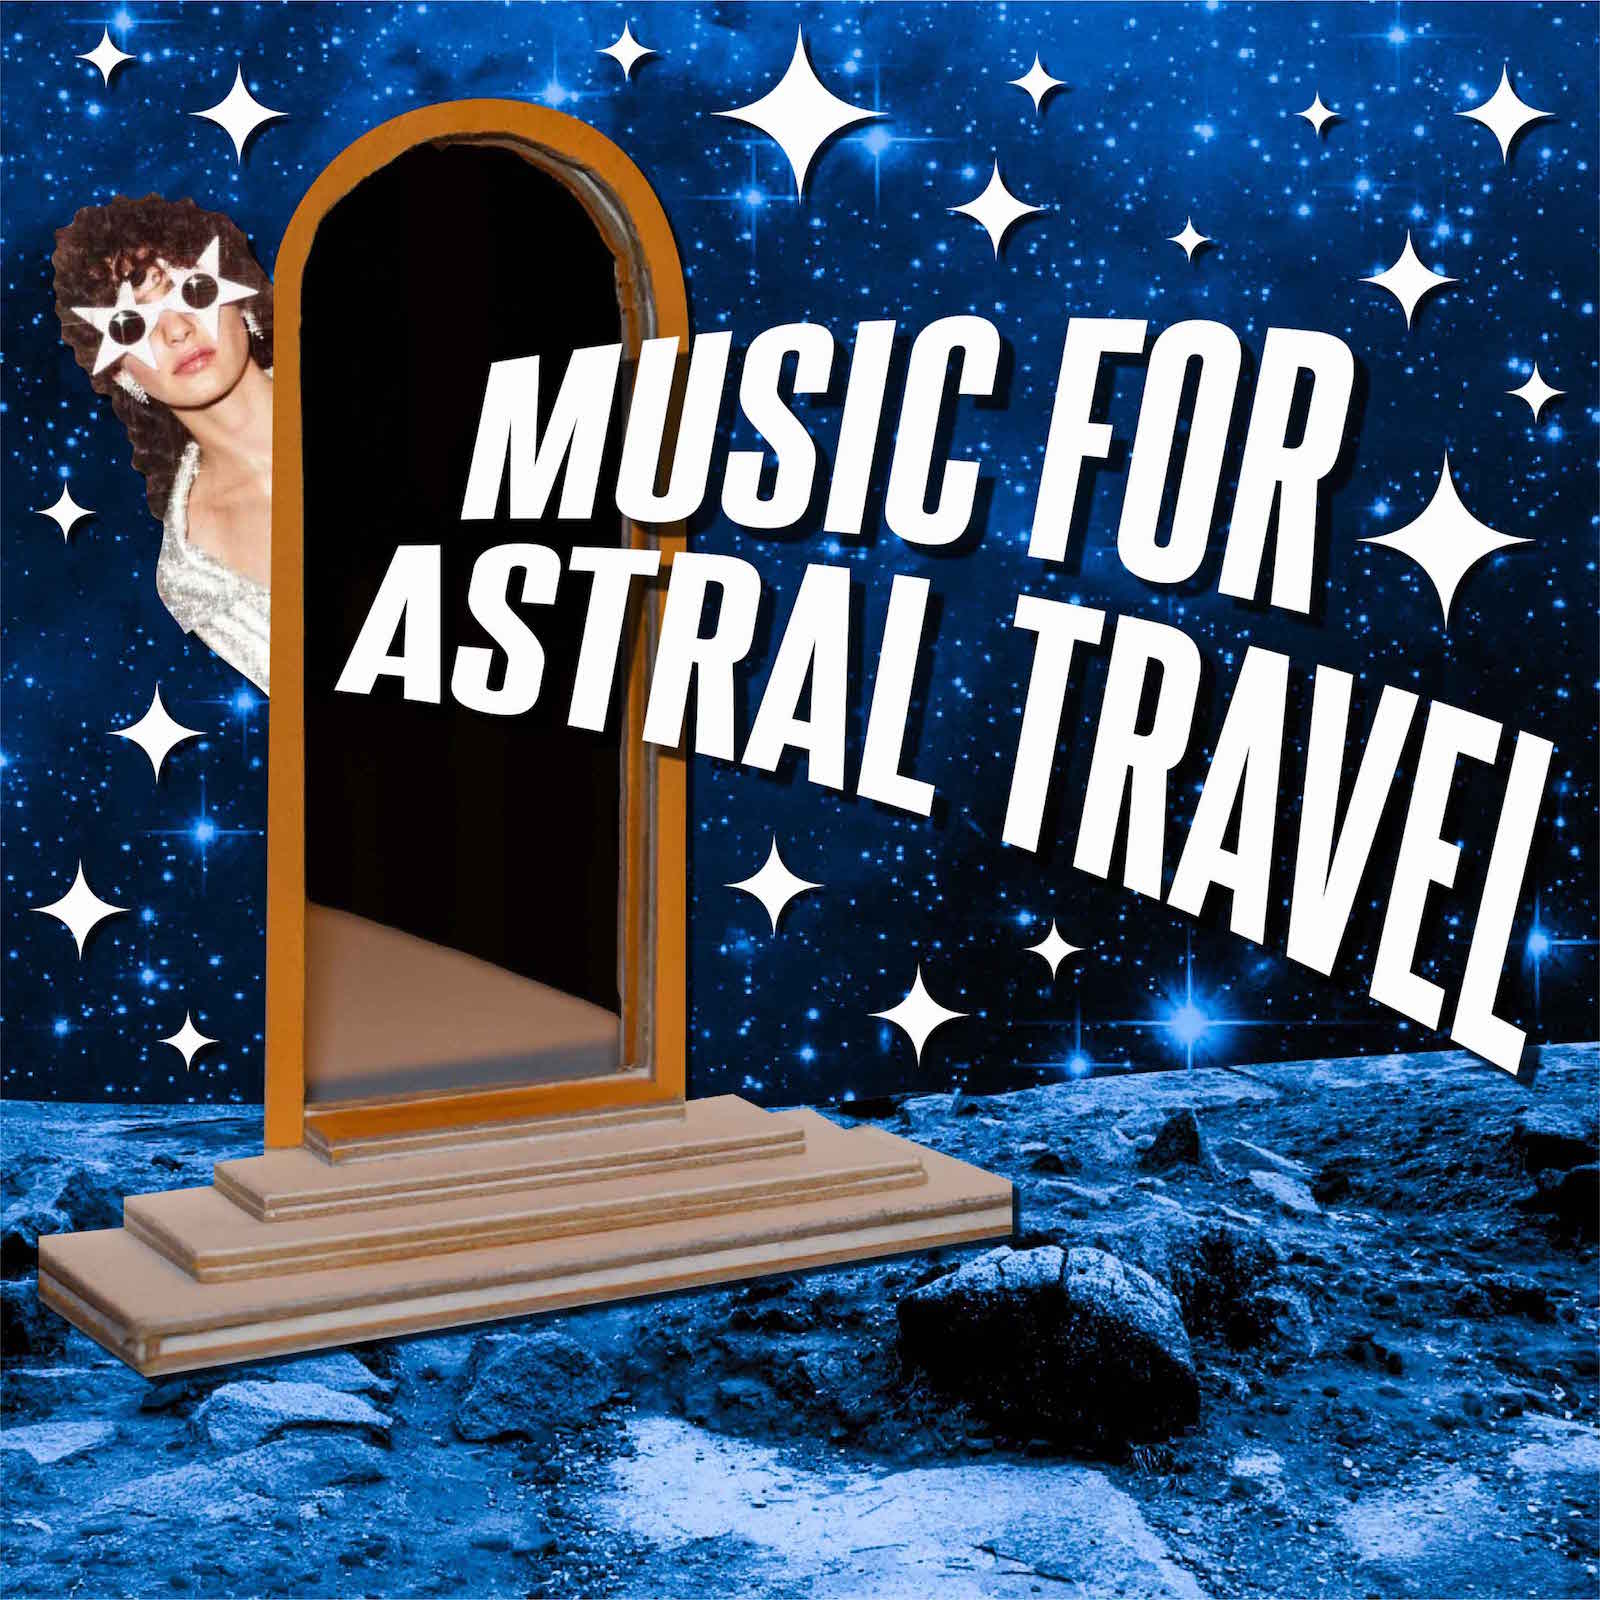 Artwork for Music for Astral Travel